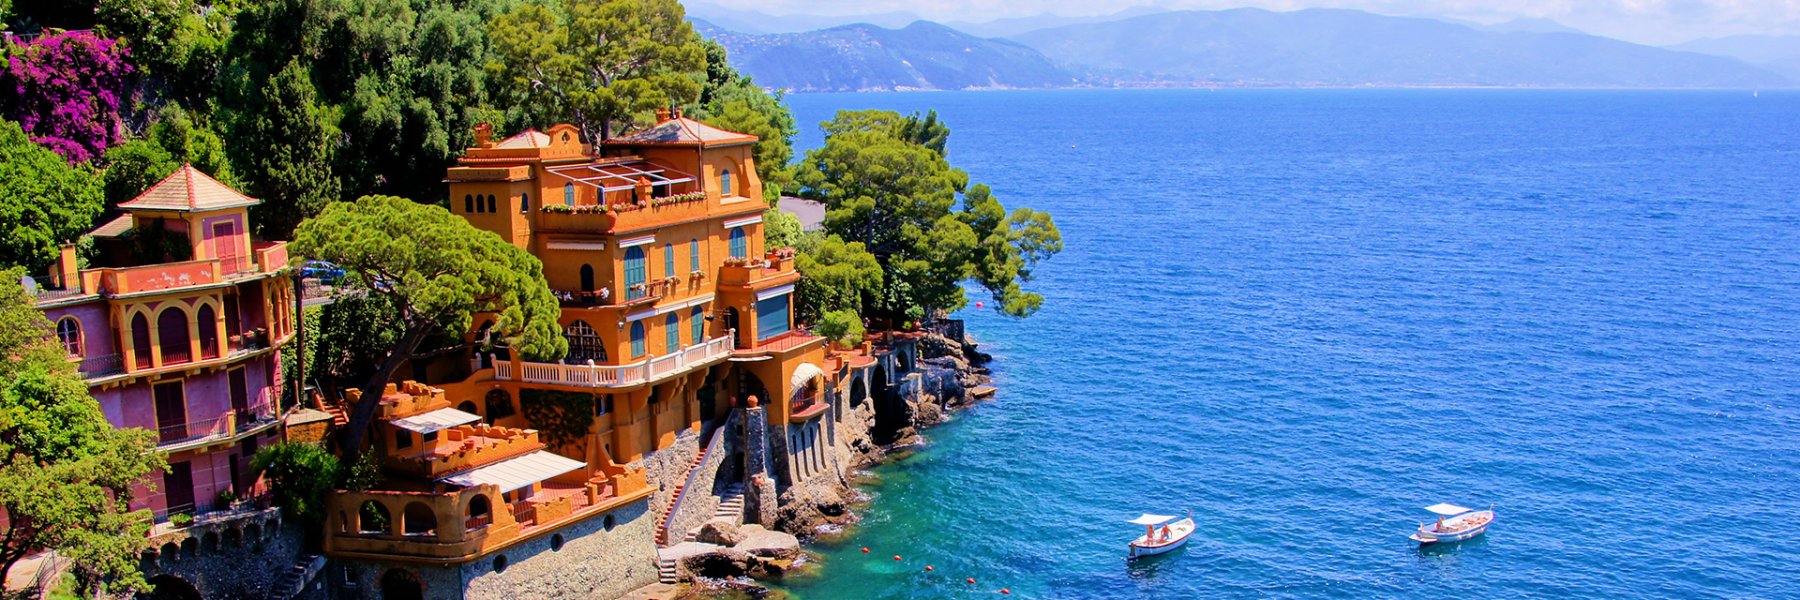 Luxuriöse Ferienhäuser in Italien